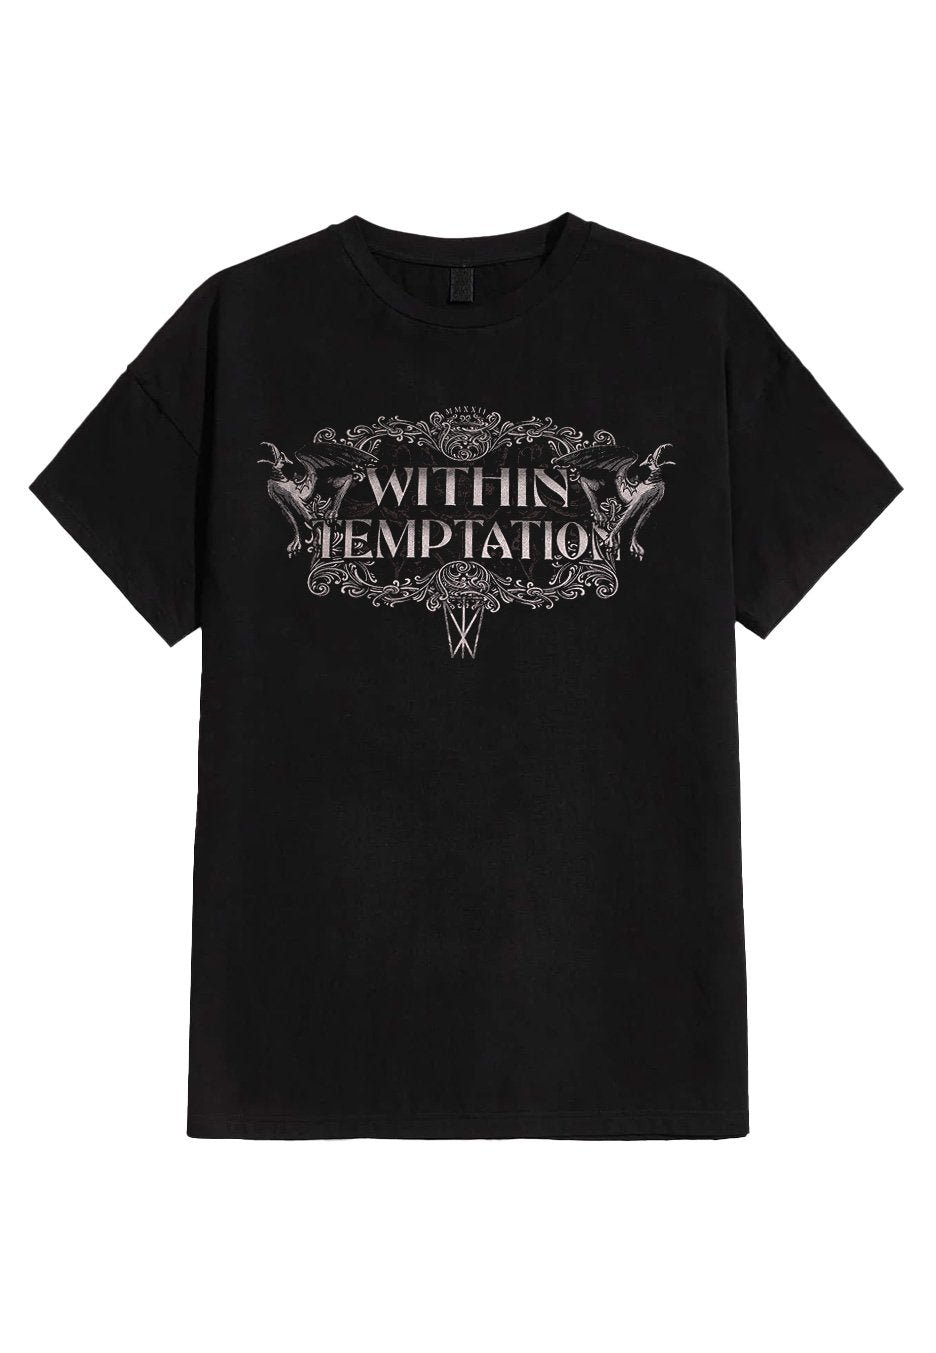 Within Temptation - Gargoyle - T-Shirt